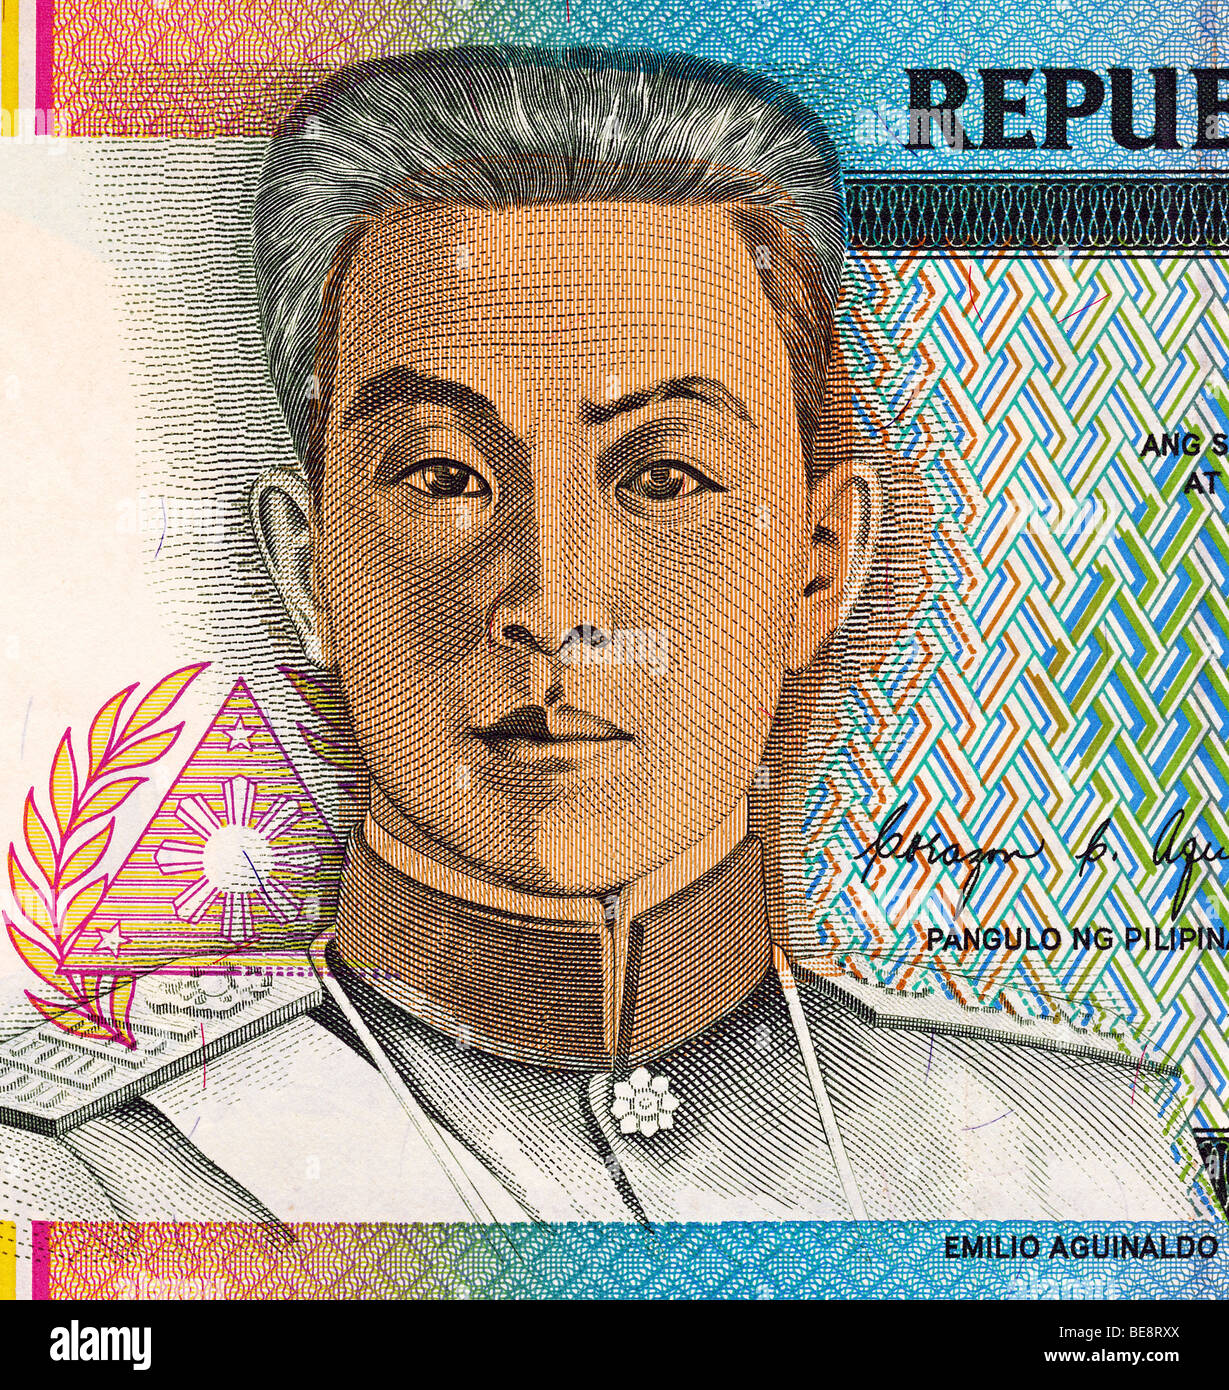 Philippine 5 Peso Banknote, Emilio Aguinaldo Portrait. Stock Photo